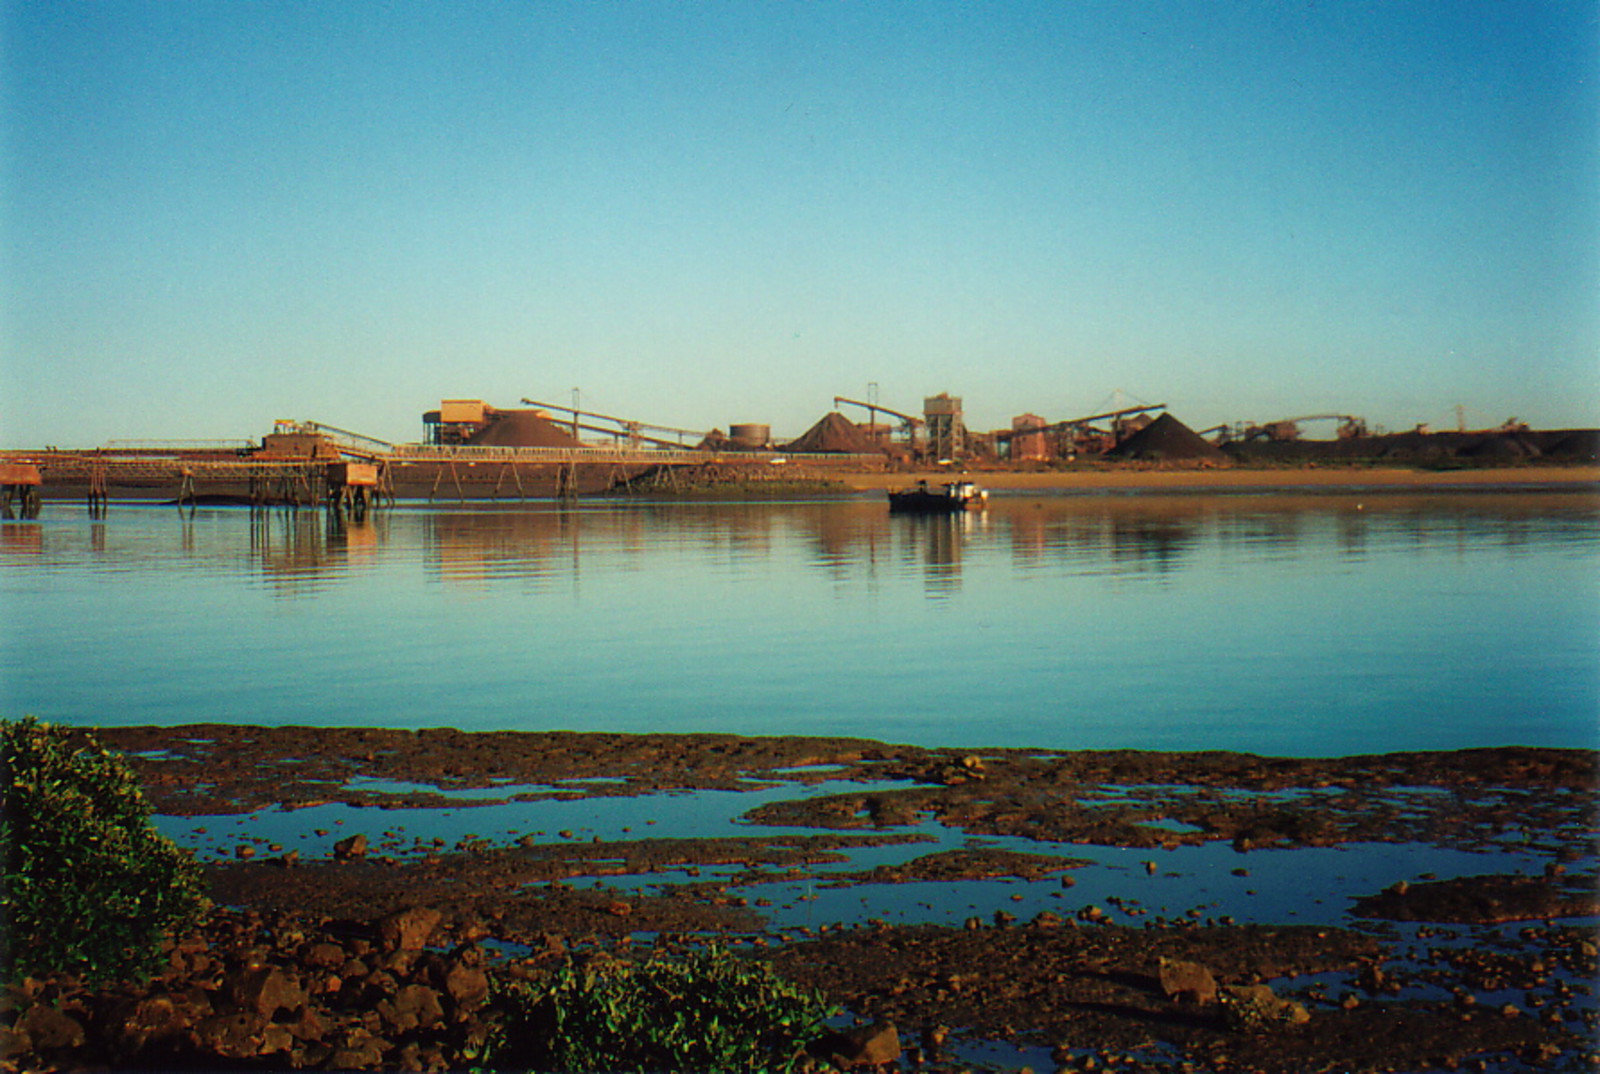 The port of Port Hedland